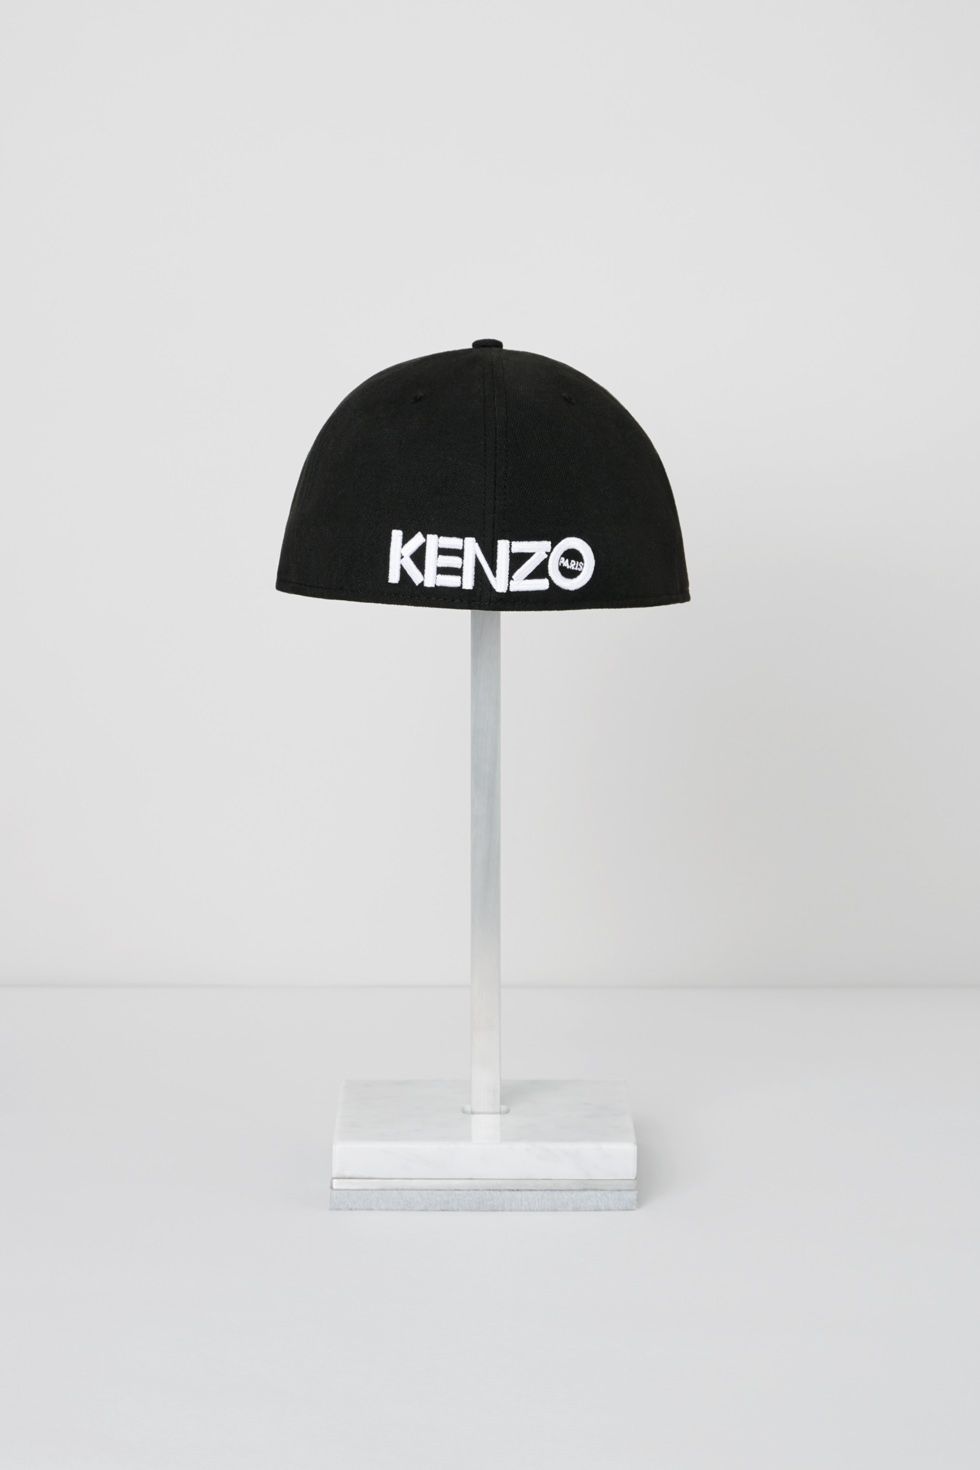 kenzo-new-era_eye-cap_04-1